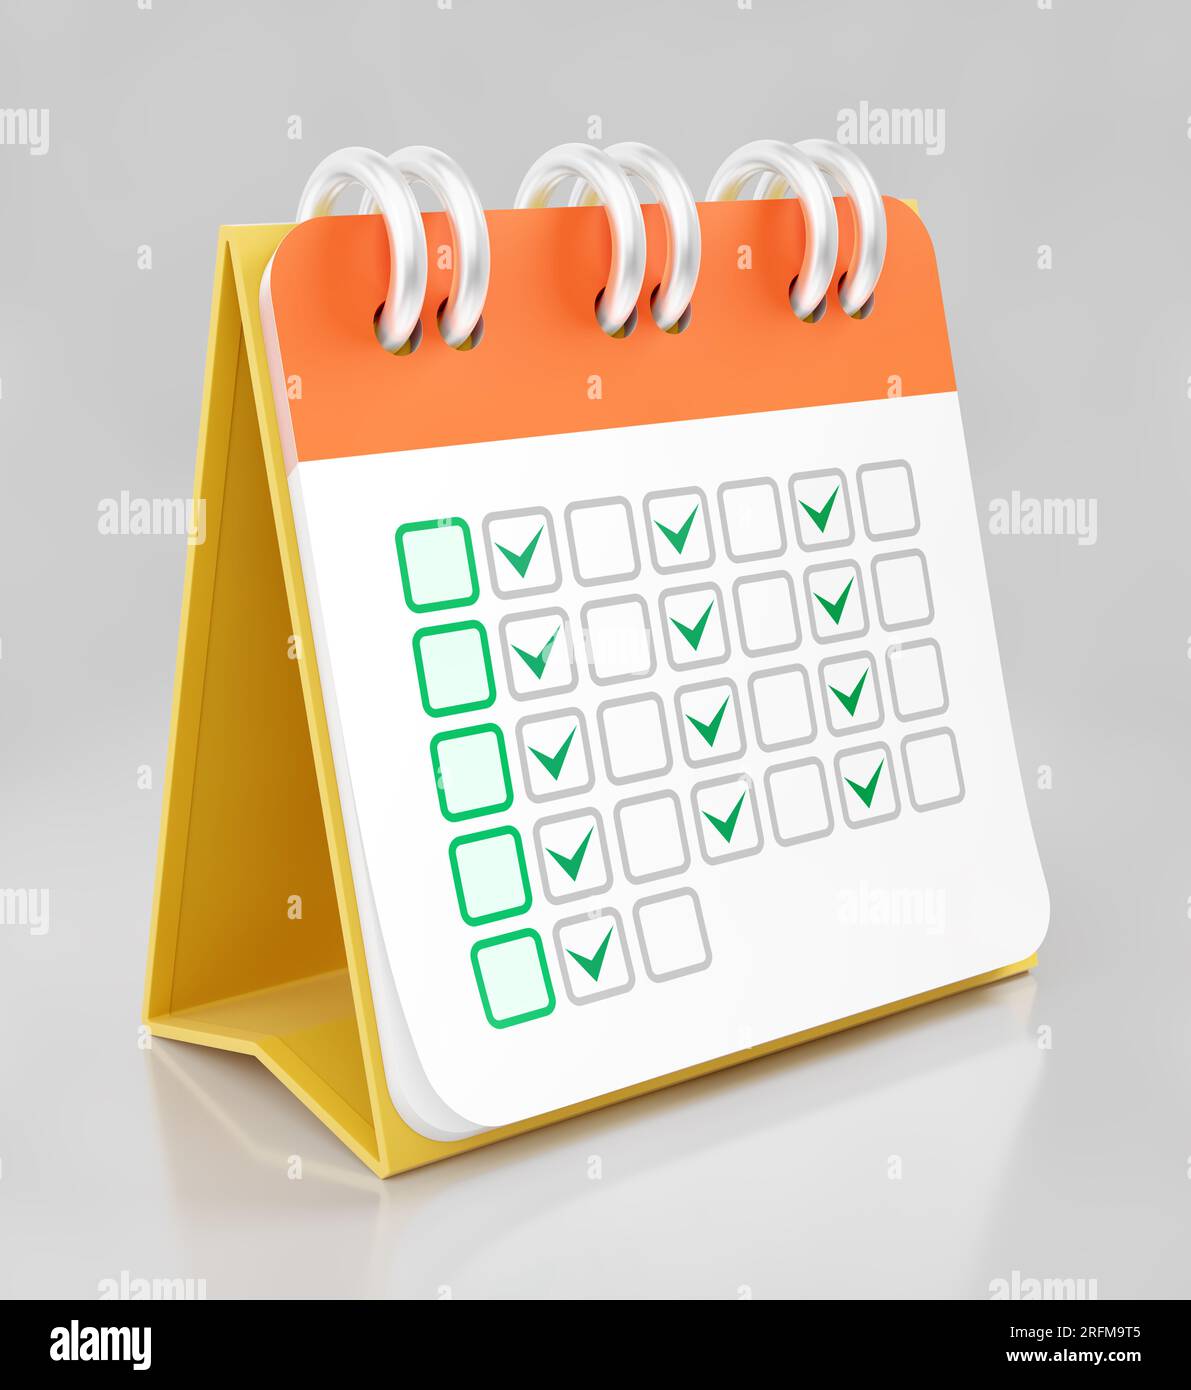 A Desktop Calendar Stock Photo